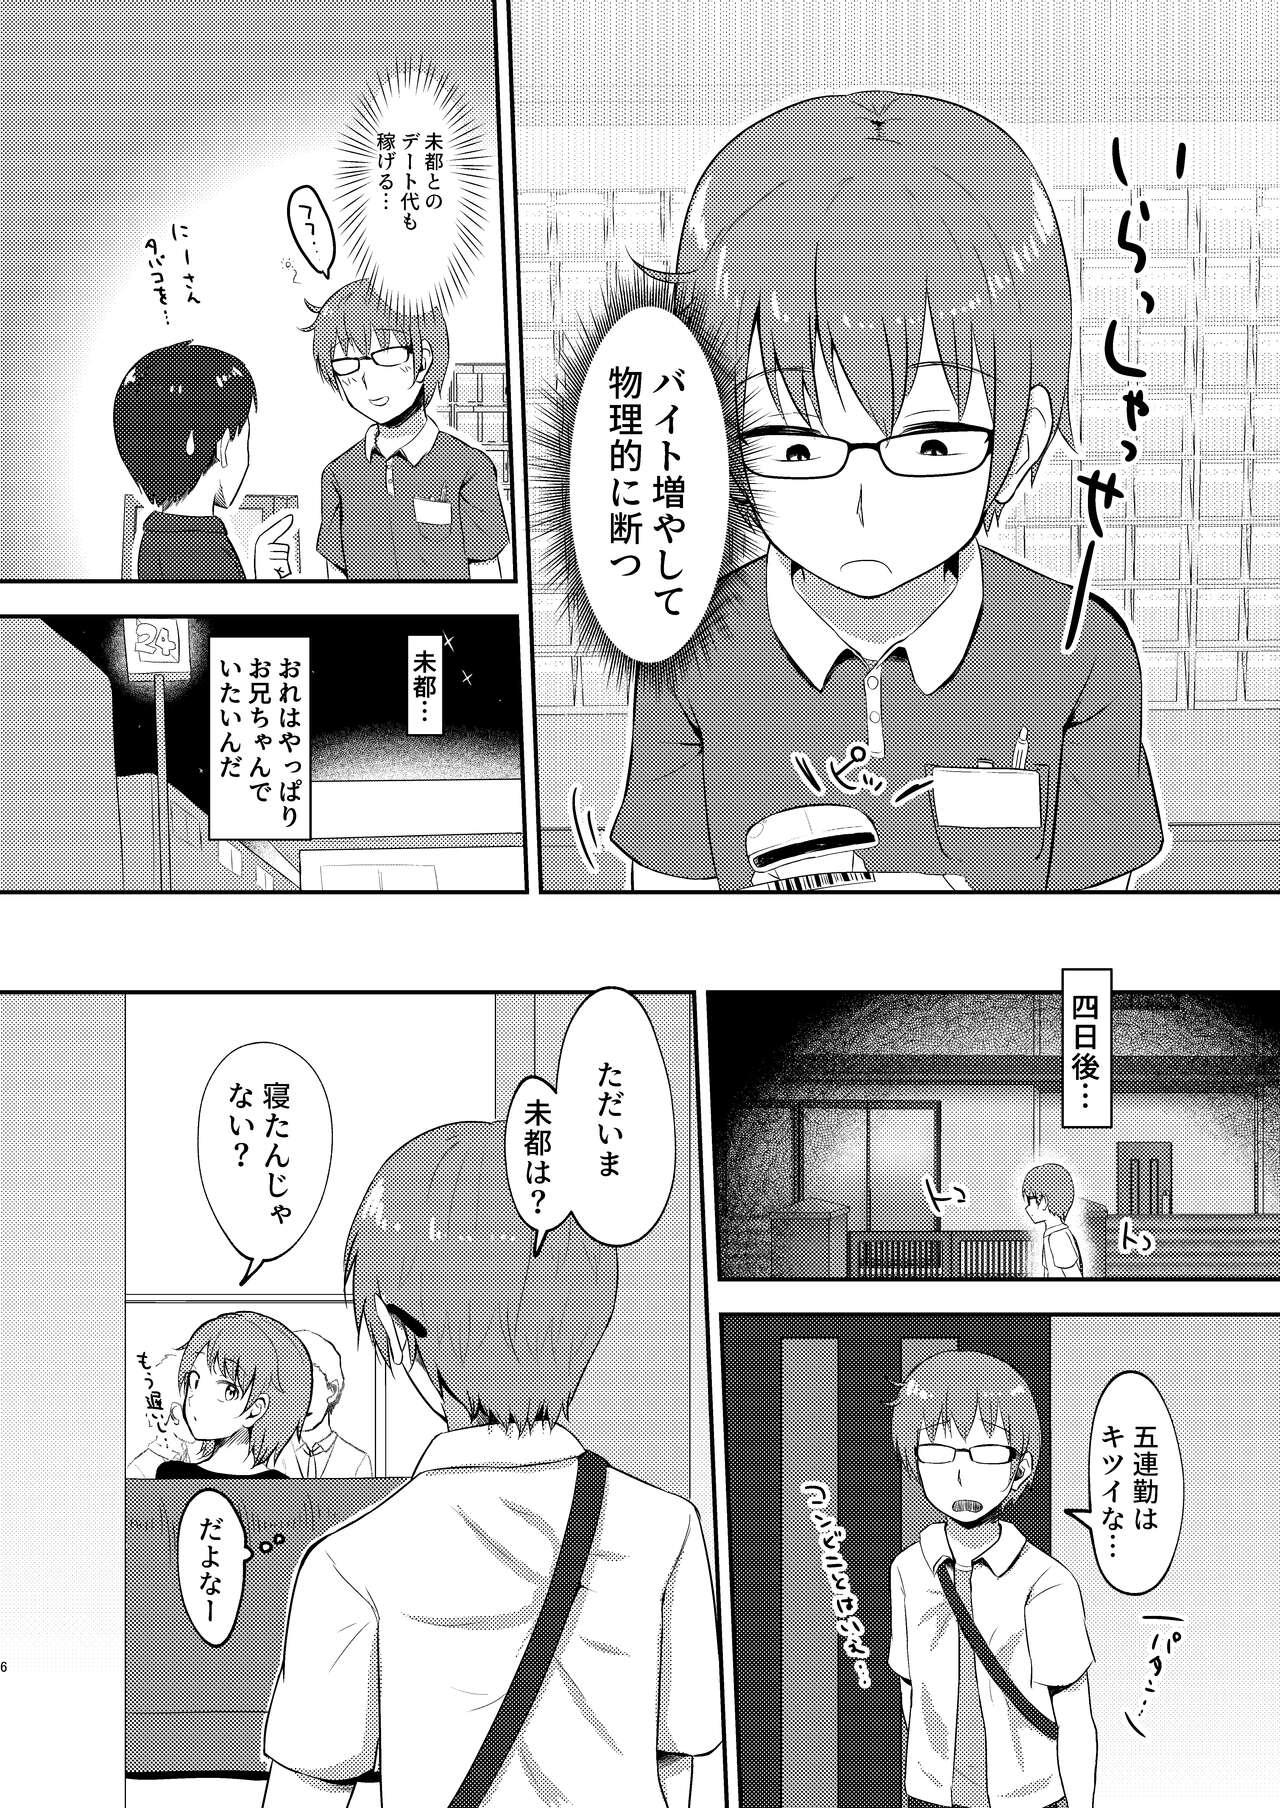 Breeding Imouto-chan wa Arawaretai!! 3 - Original Family - Page 6